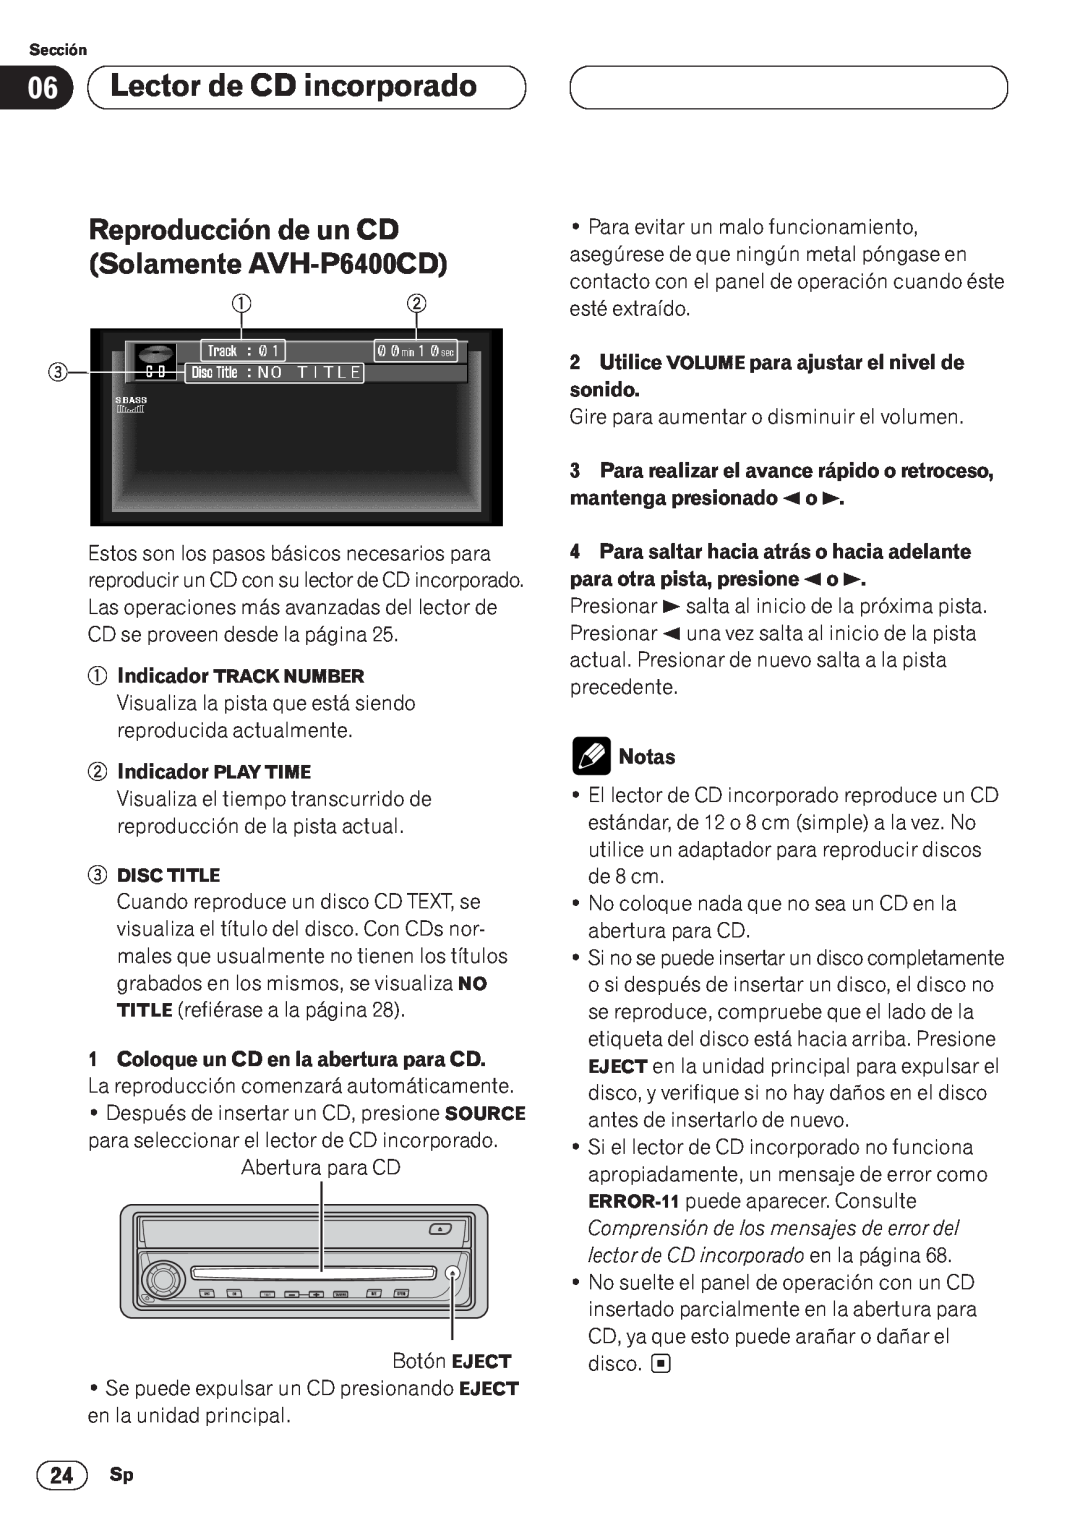 Pioneer Lector de CD incorporado, Reproducción de un CD Solamente AVH-P6400CD, Indicador PLAY TIME, Notas 